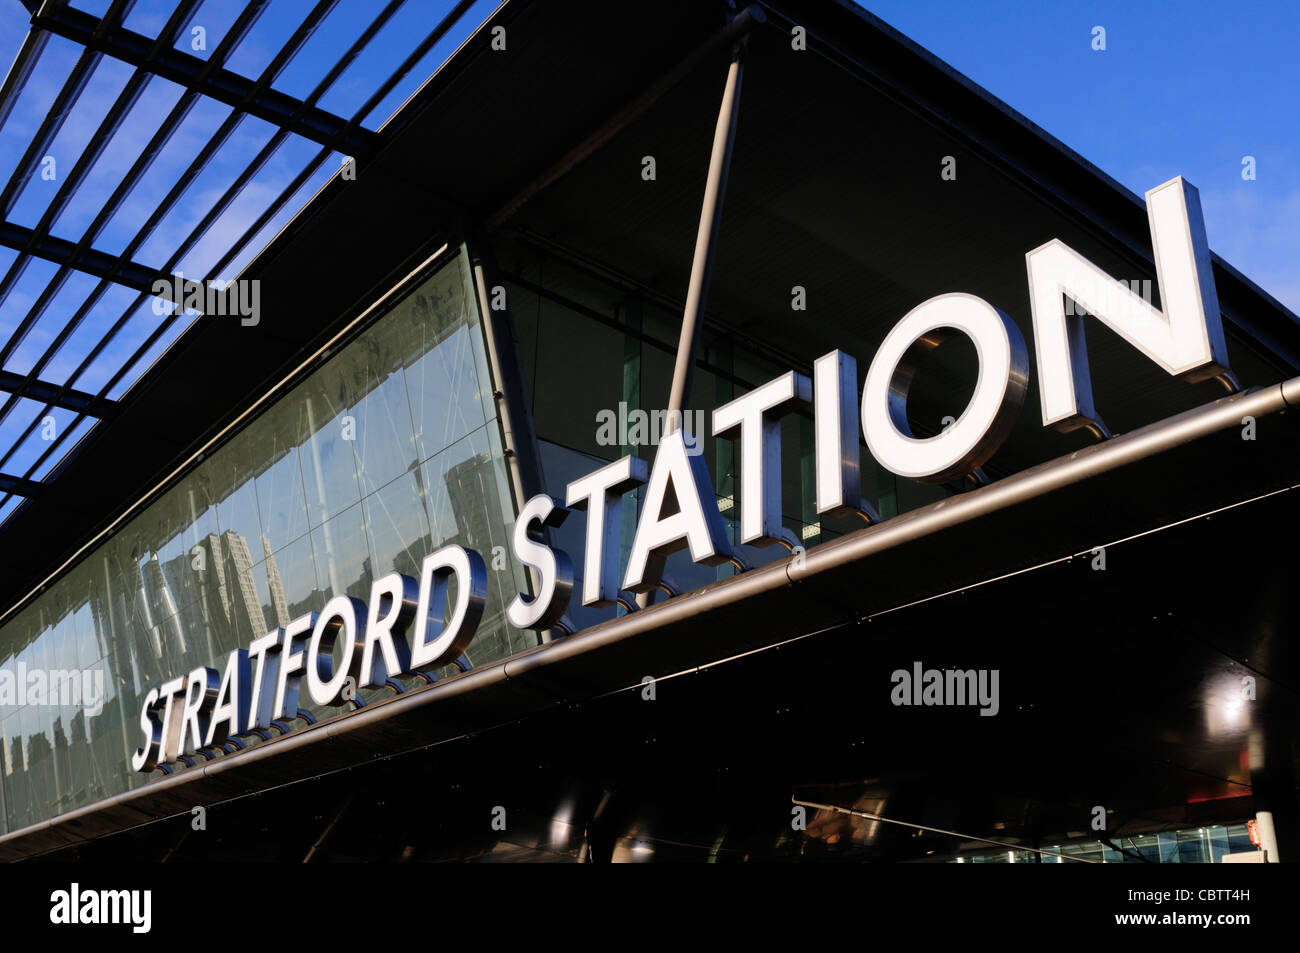 Stratford Station, Stratford, London, England, UK Stock Photo